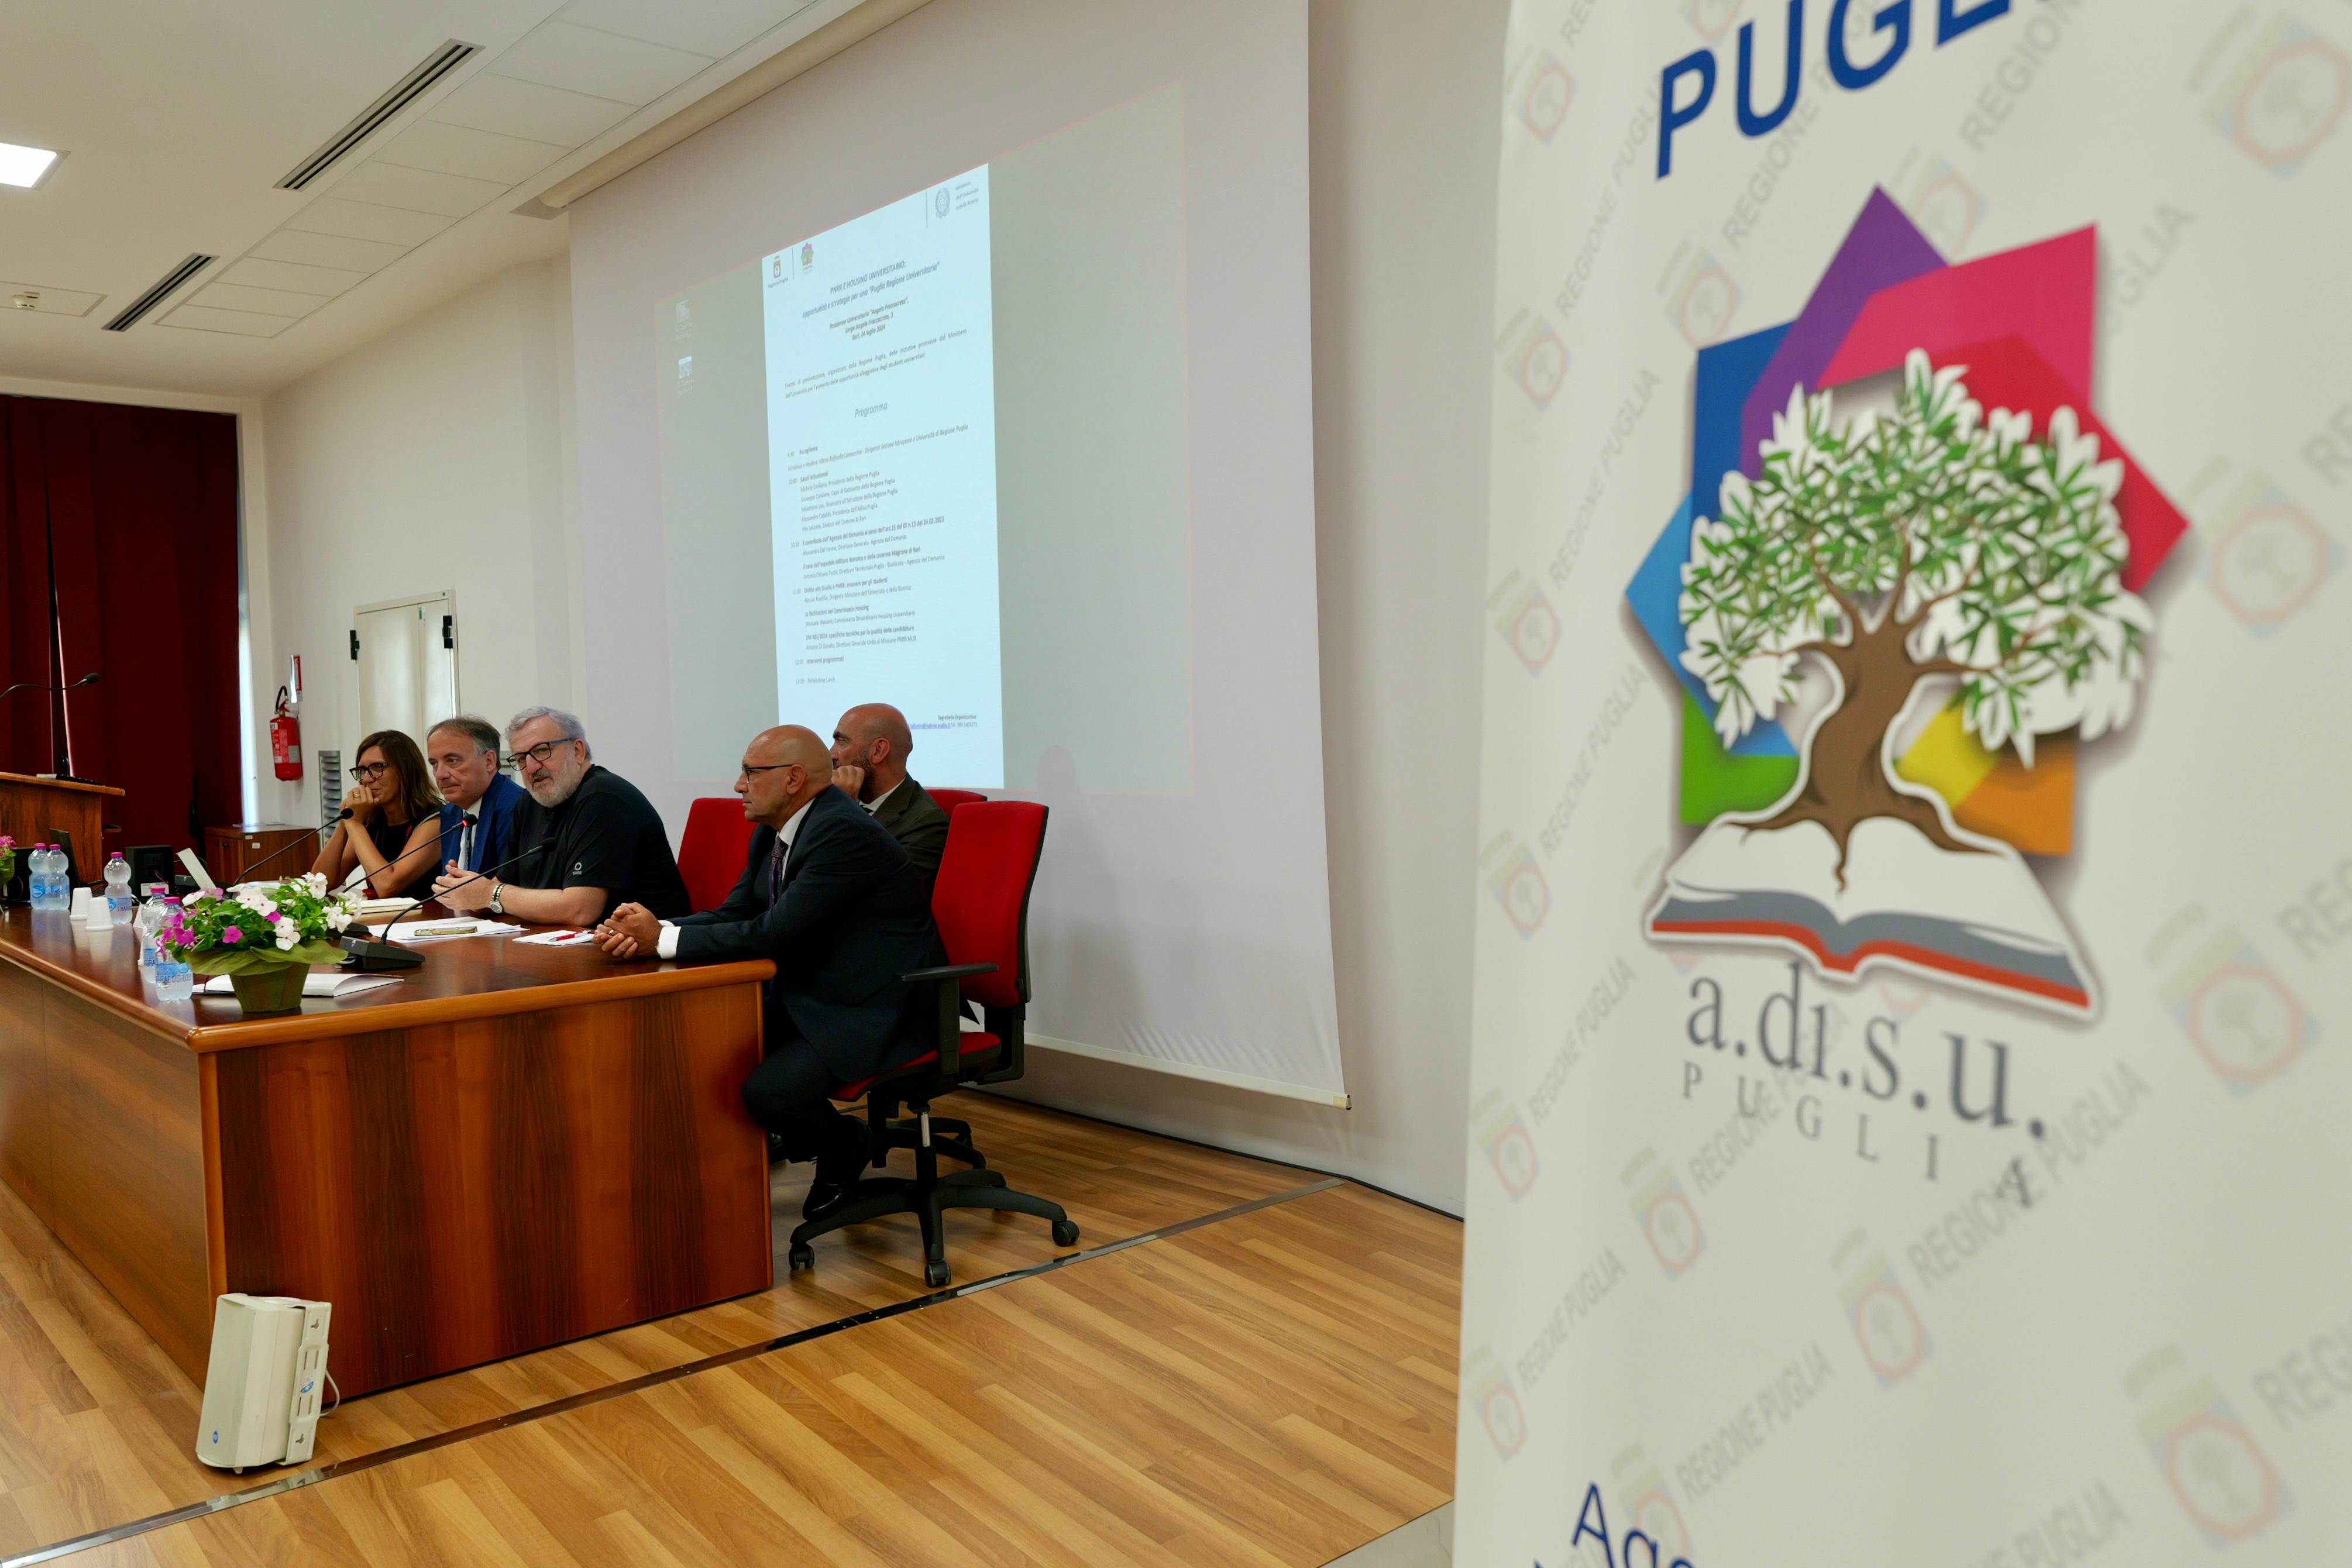 Galleria PNRR e nuovi alloggi universitari, nuove sfide per la Puglia tra sostenibilità, innovazione e qualità della vita - Diapositiva 2 di 8